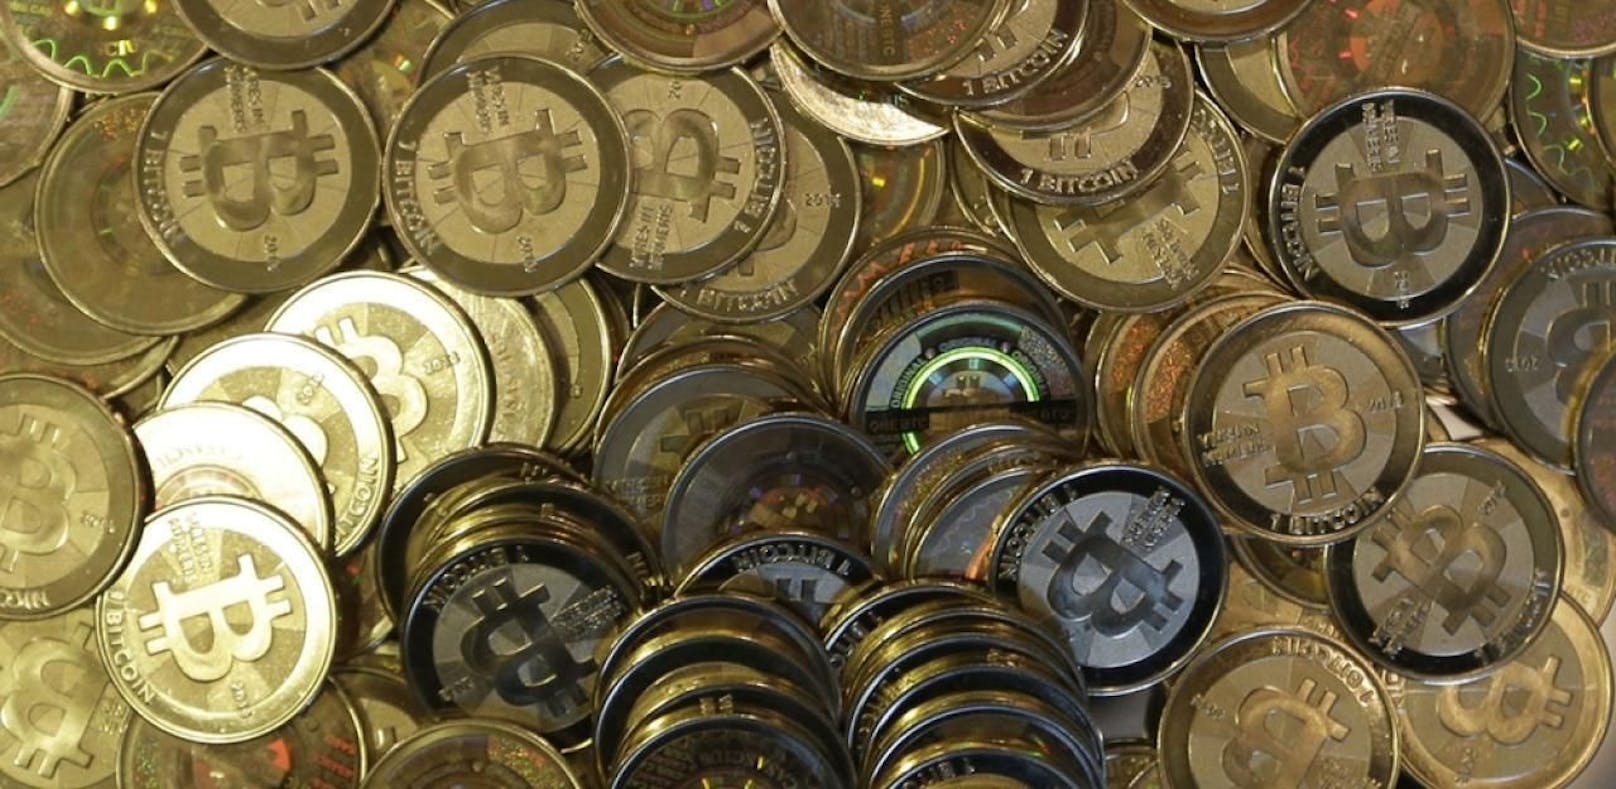 Die Digitalwährung Bitcoin war Ziel eines Betrugs.